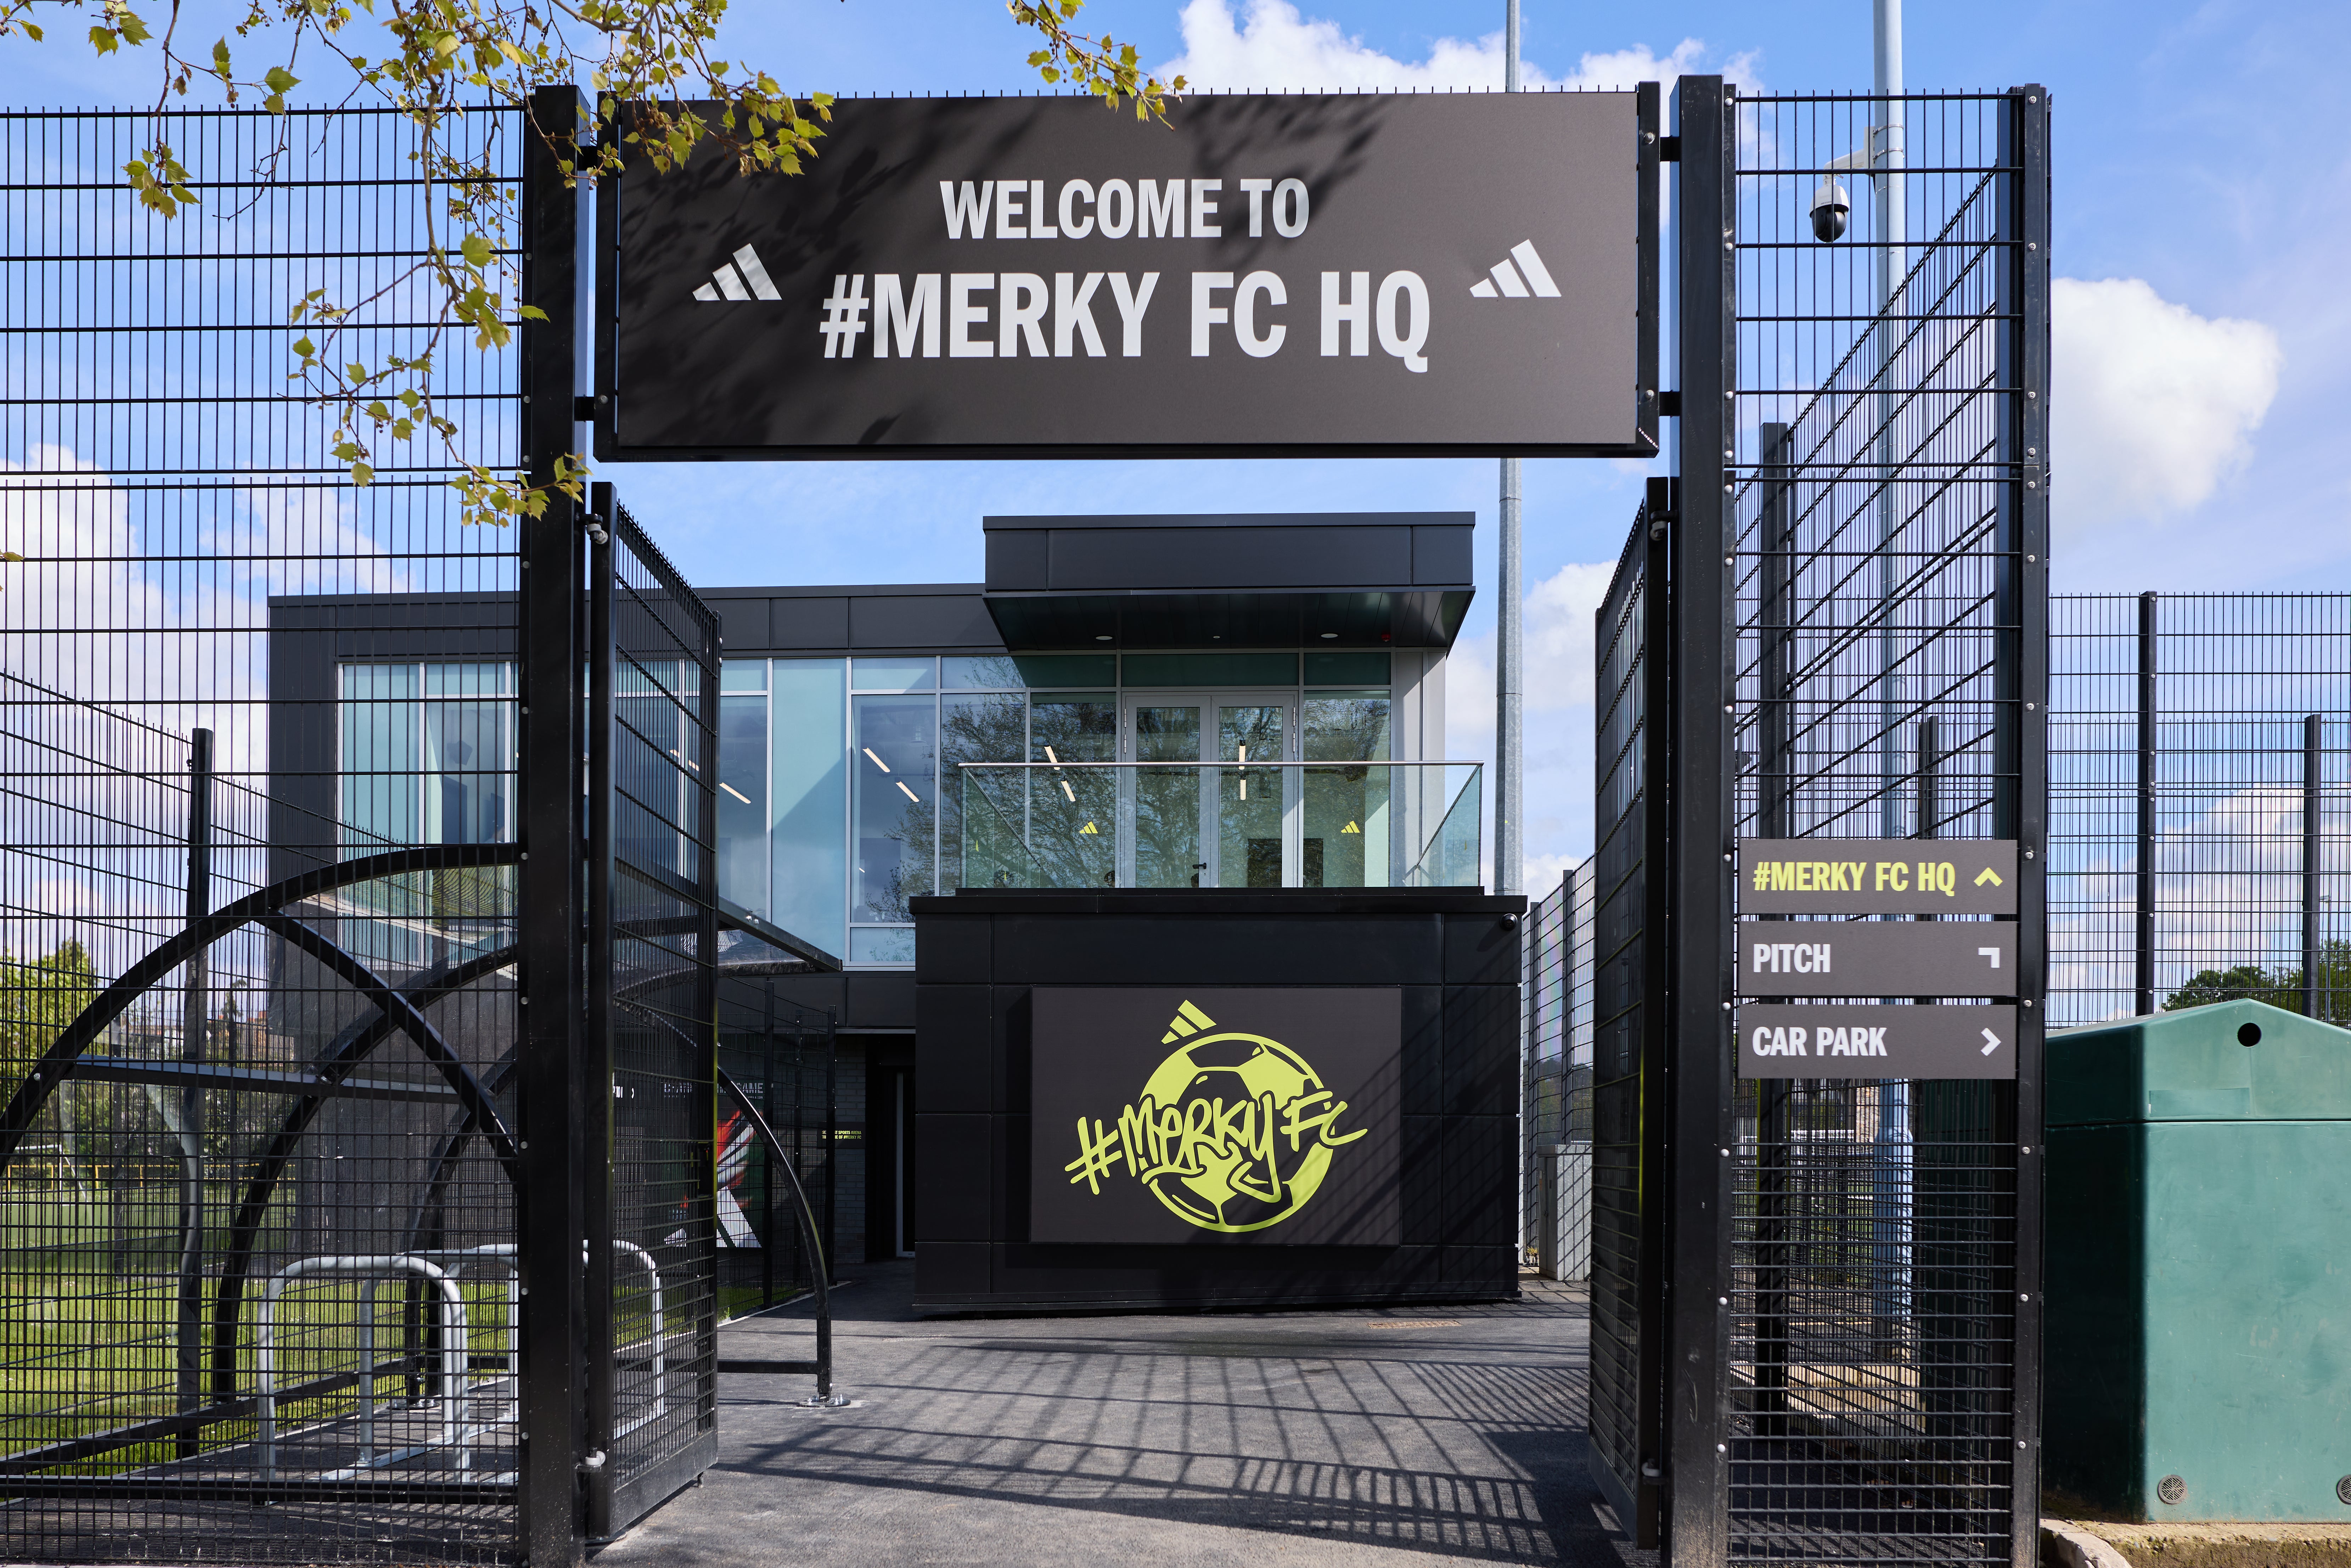 #MerkyFC HQ